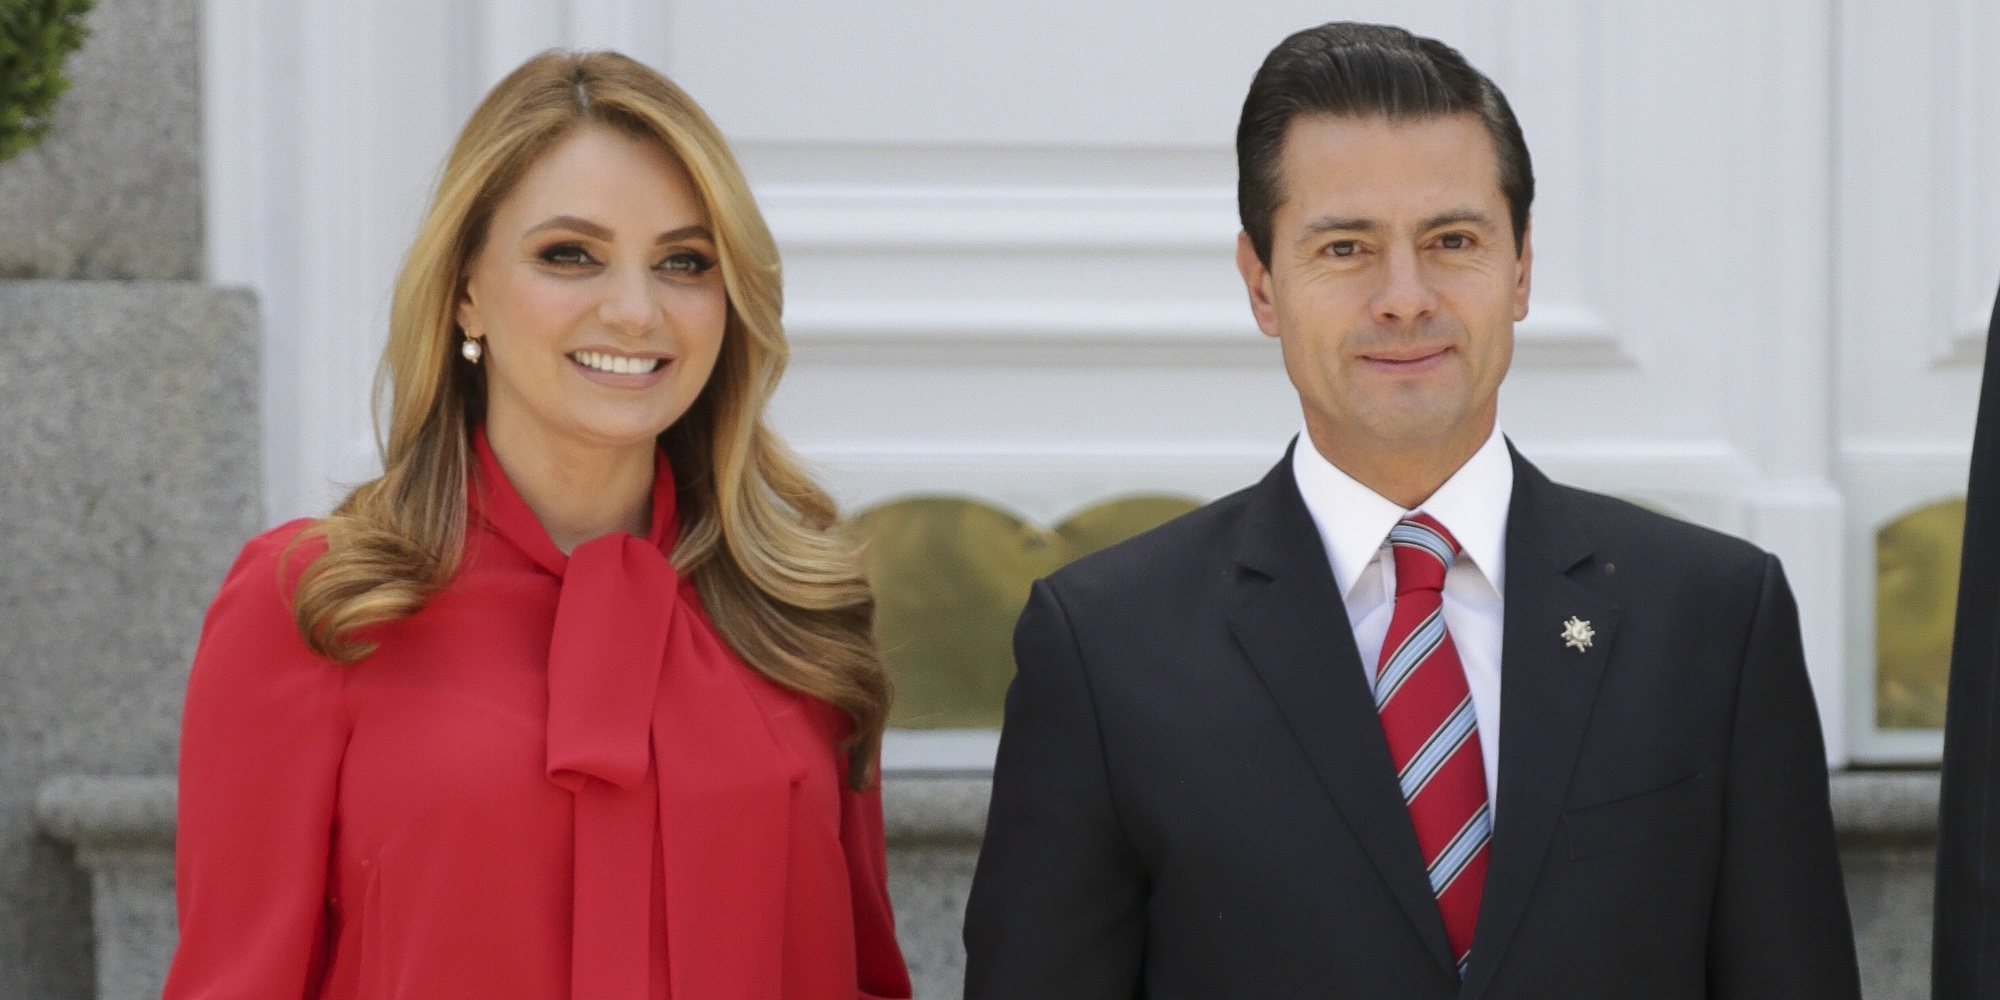 Enrique Peña Nieto y Angélica Rivera se separaron en diciembre de 2018